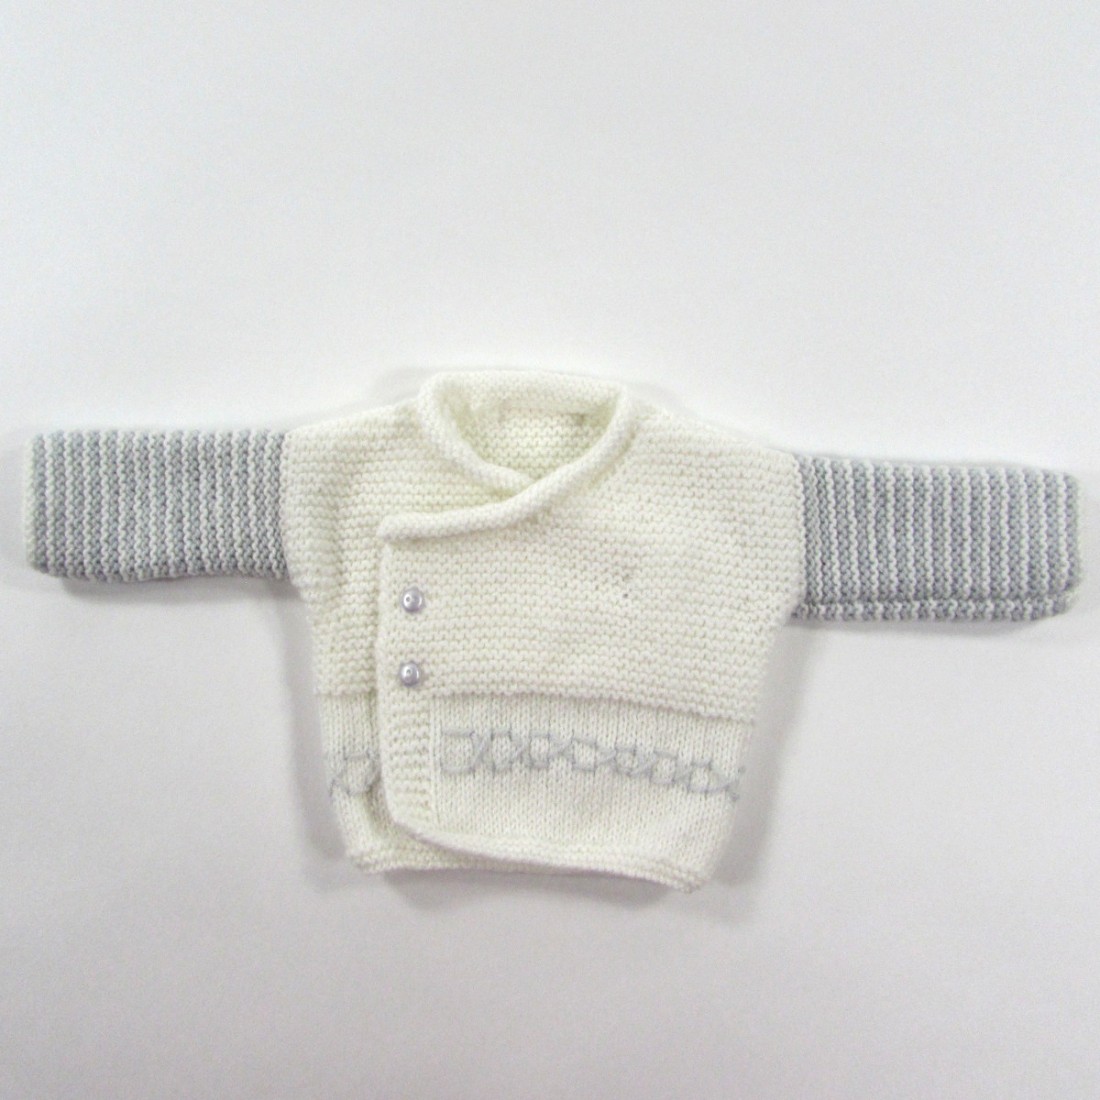 Brassière bébé garçon prématuré en laine blanc et gris perle